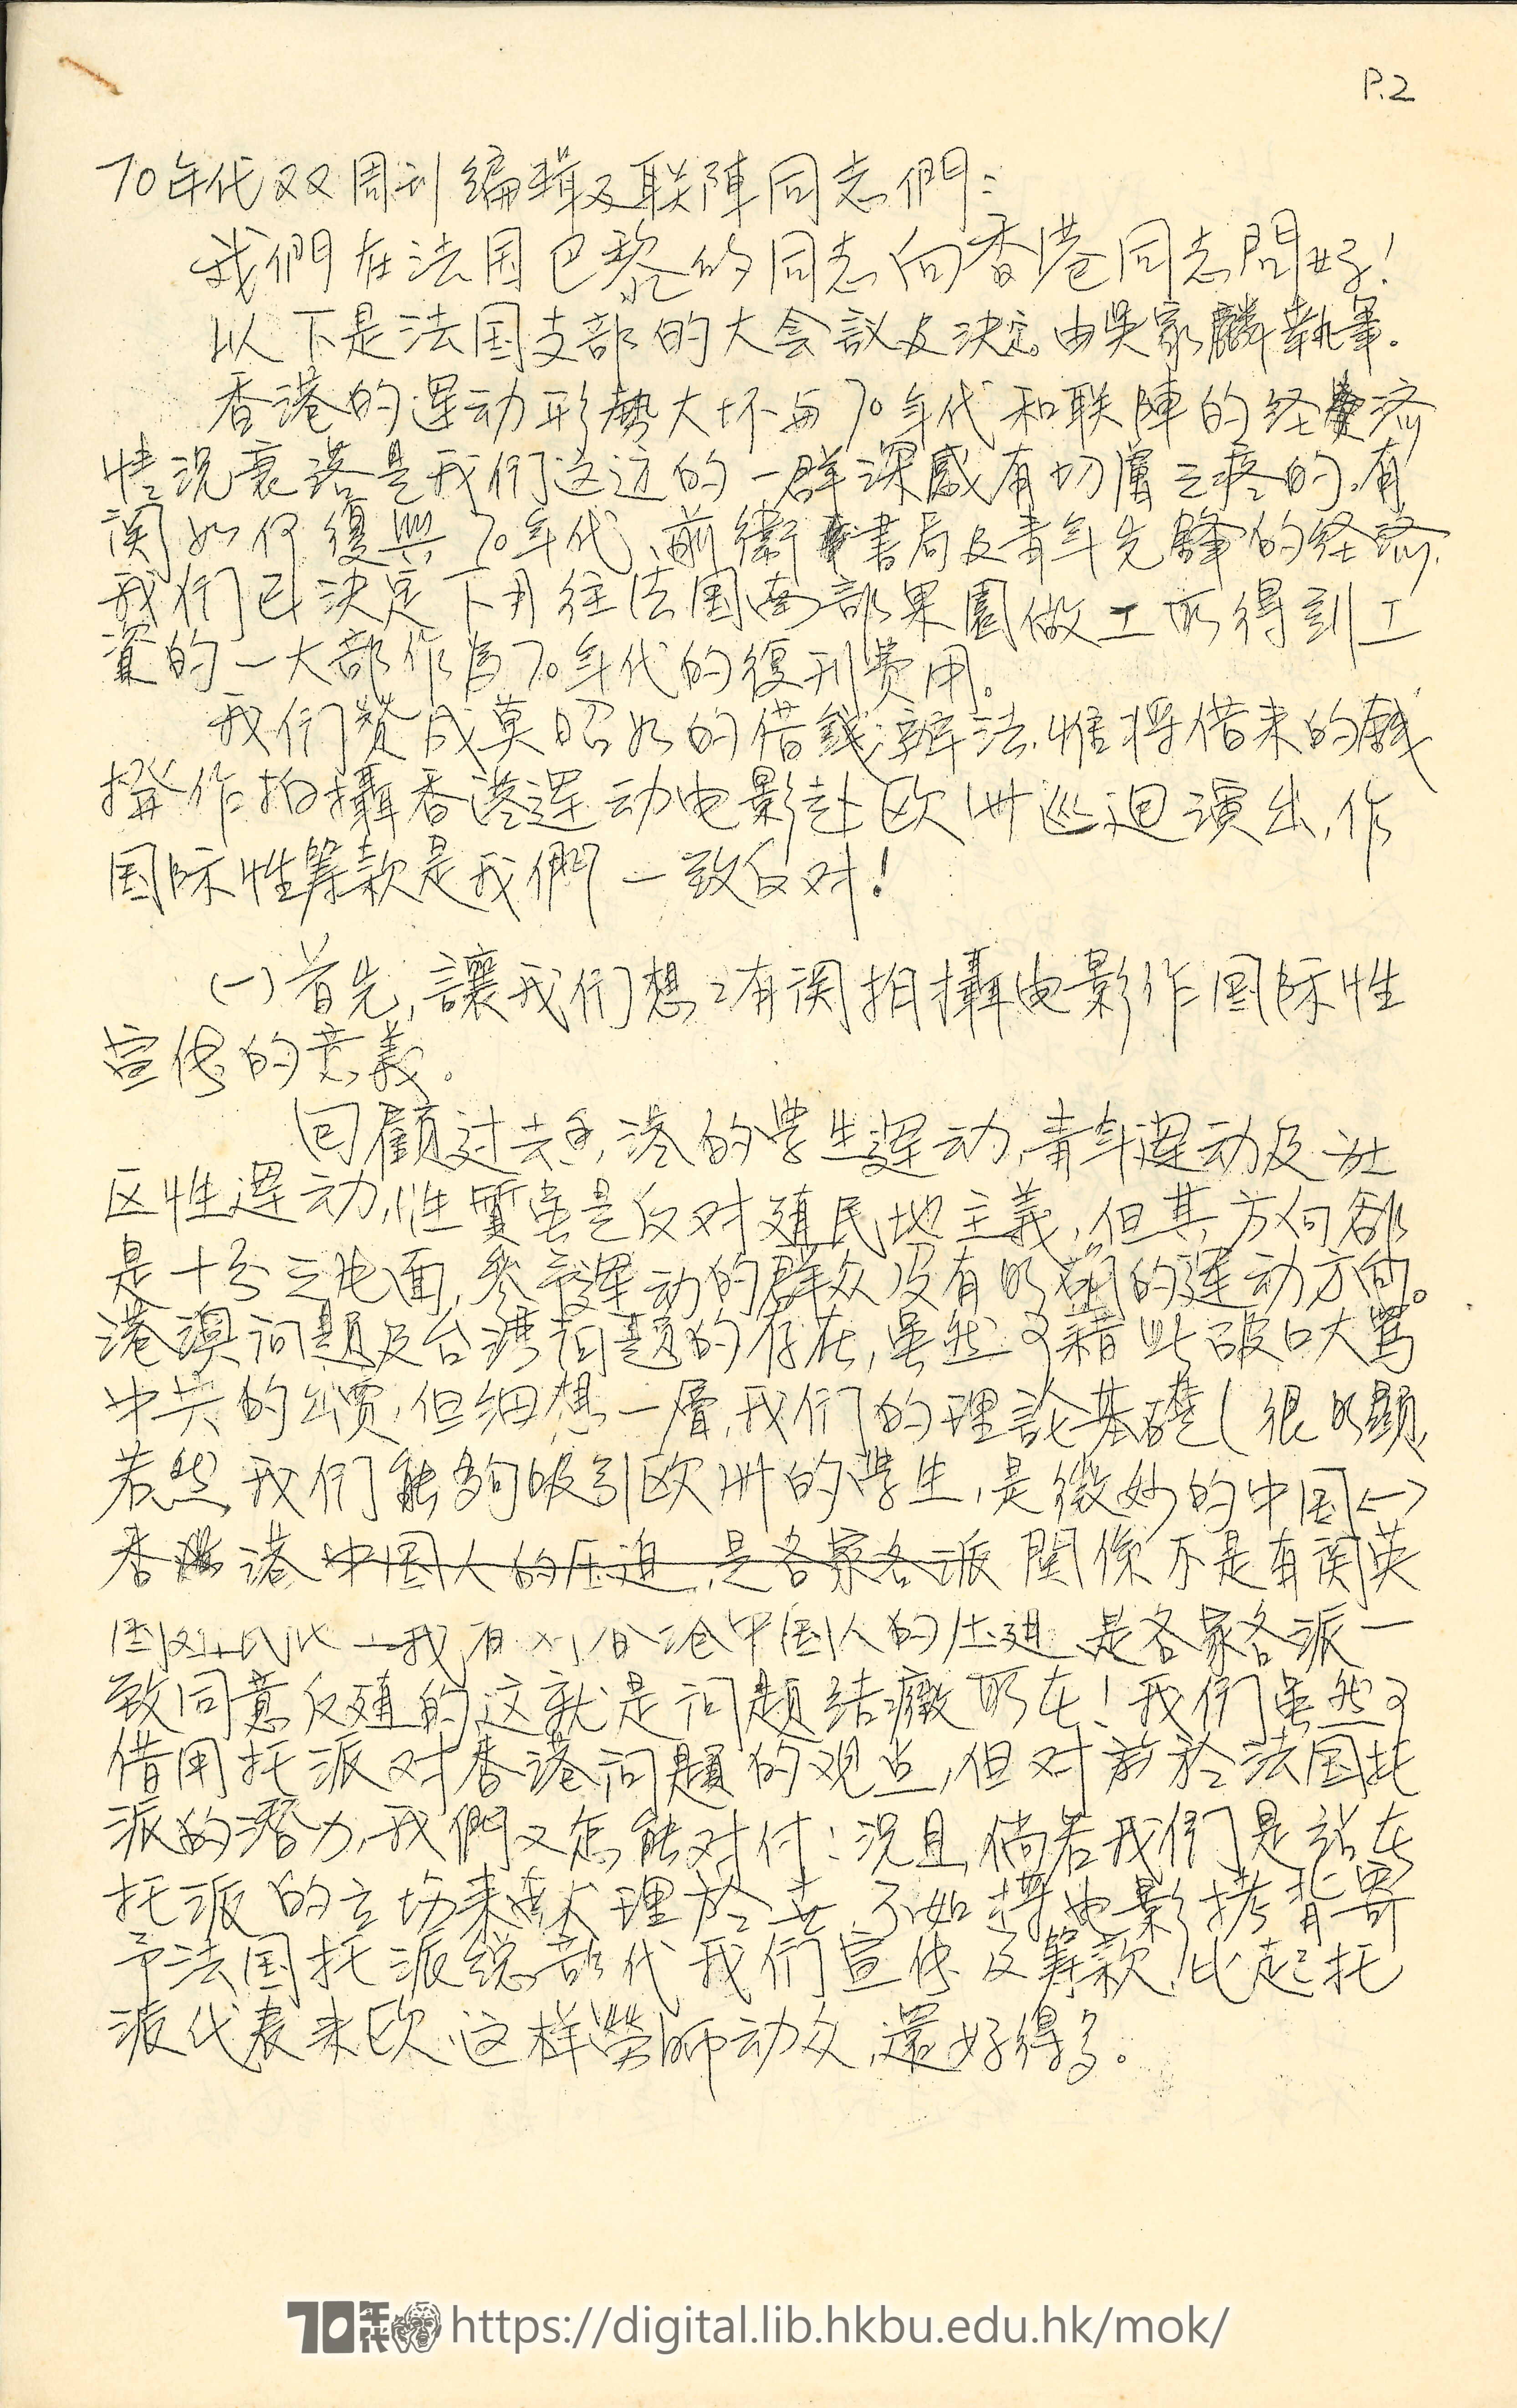   Letter from Ng Chung-yin, Ng Ka-lun et al to editors of 70